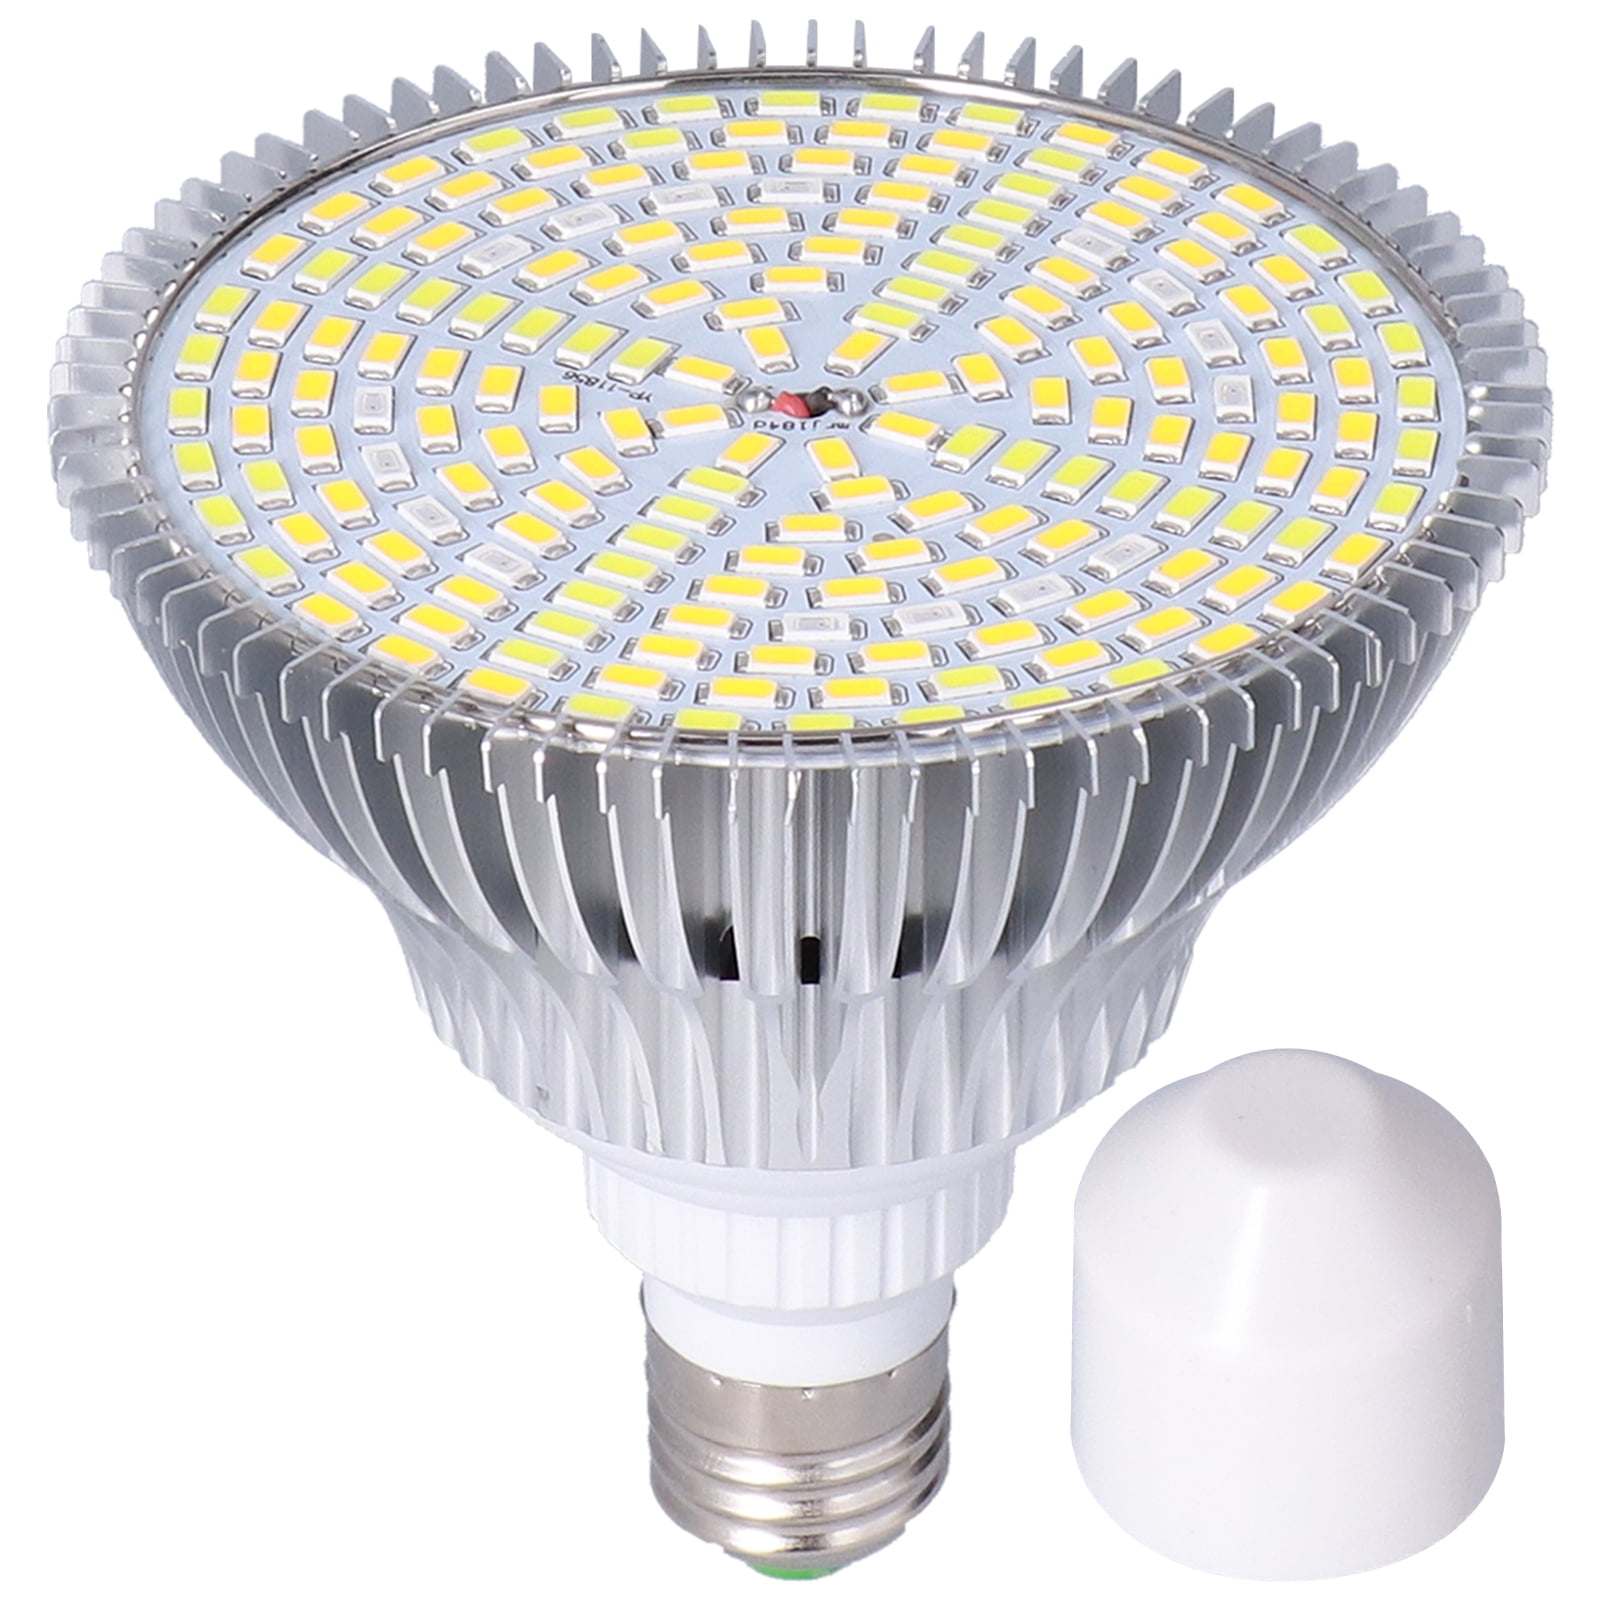 MRJ Upgraded LED Grow Light Bulb lamp Full Spectrum for Indoor Plants... 